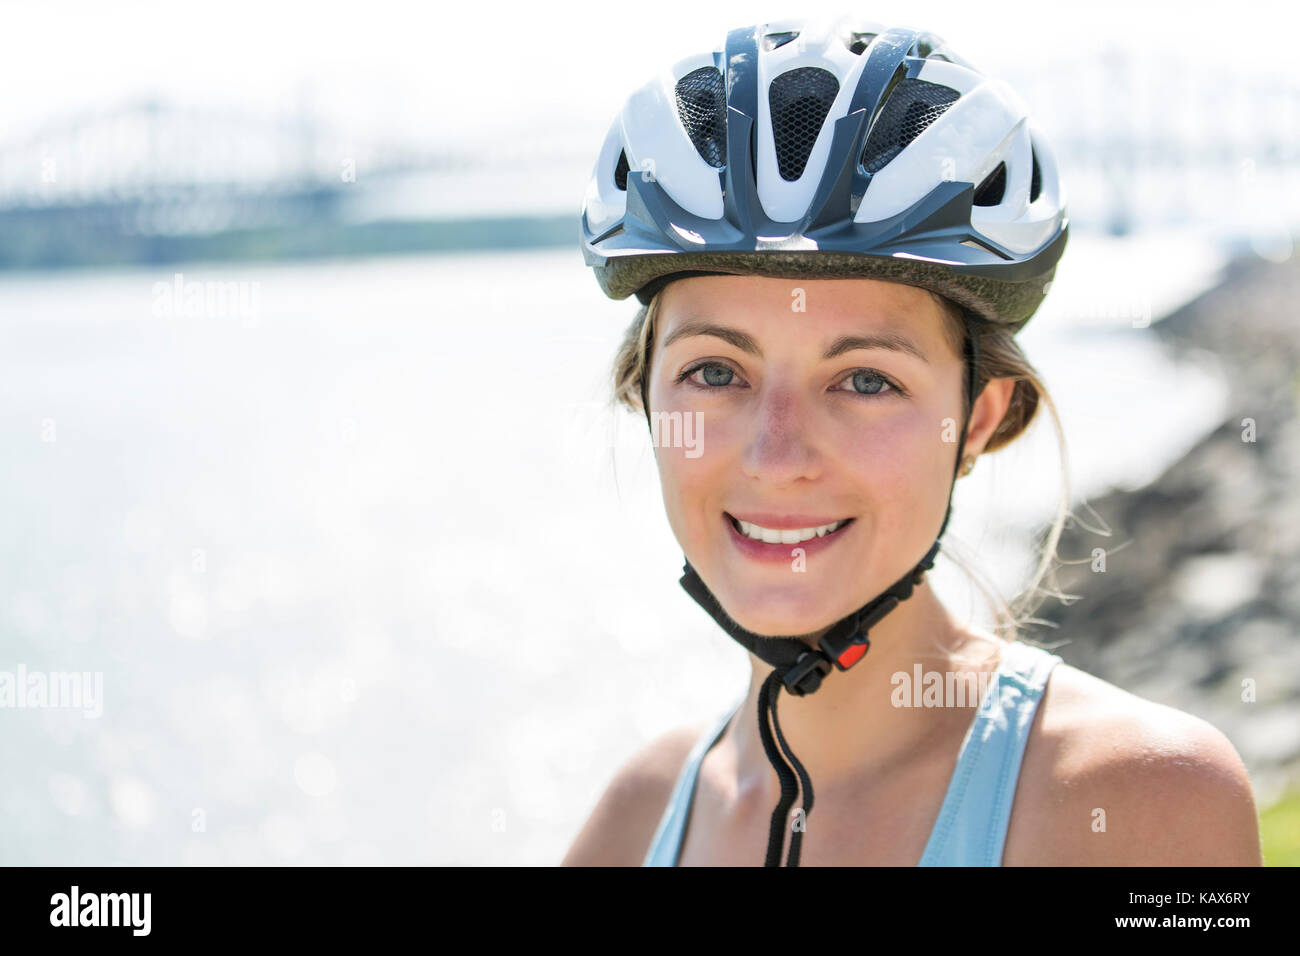 Junge Frau Reiten Fahrrad außerhalb Stockfoto